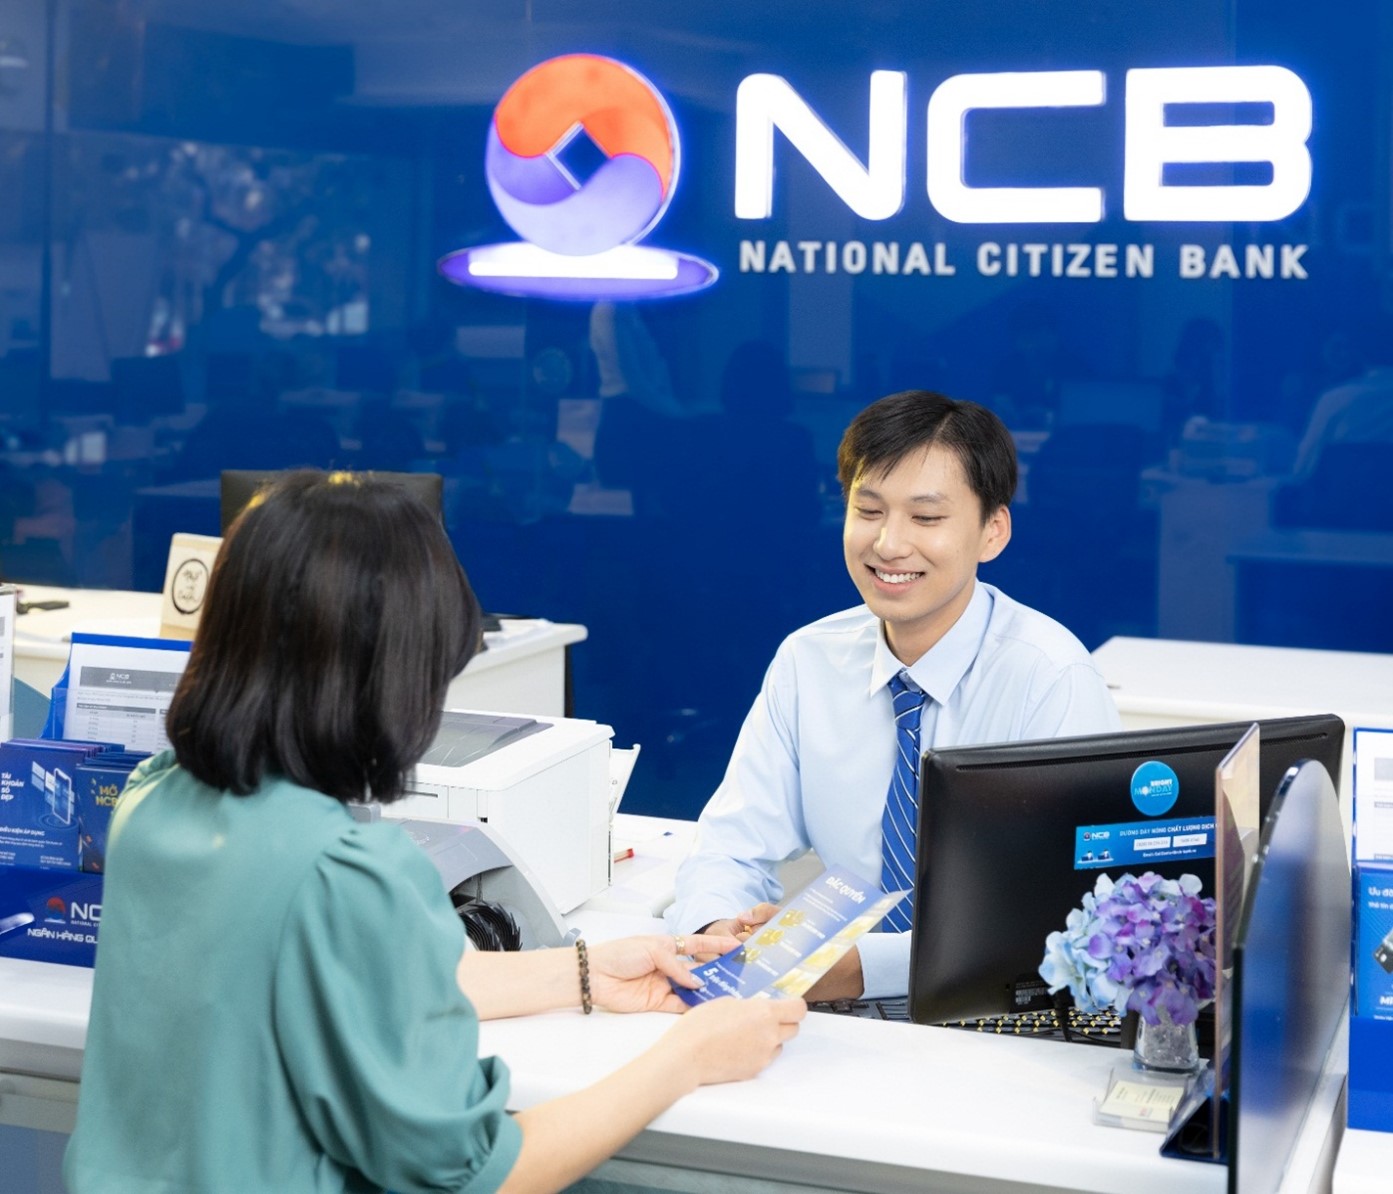 Kinh tế - NCB tặng vàng cho khách hàng chơi game trên ngân hàng số đầu xuân mới (Hình 2).